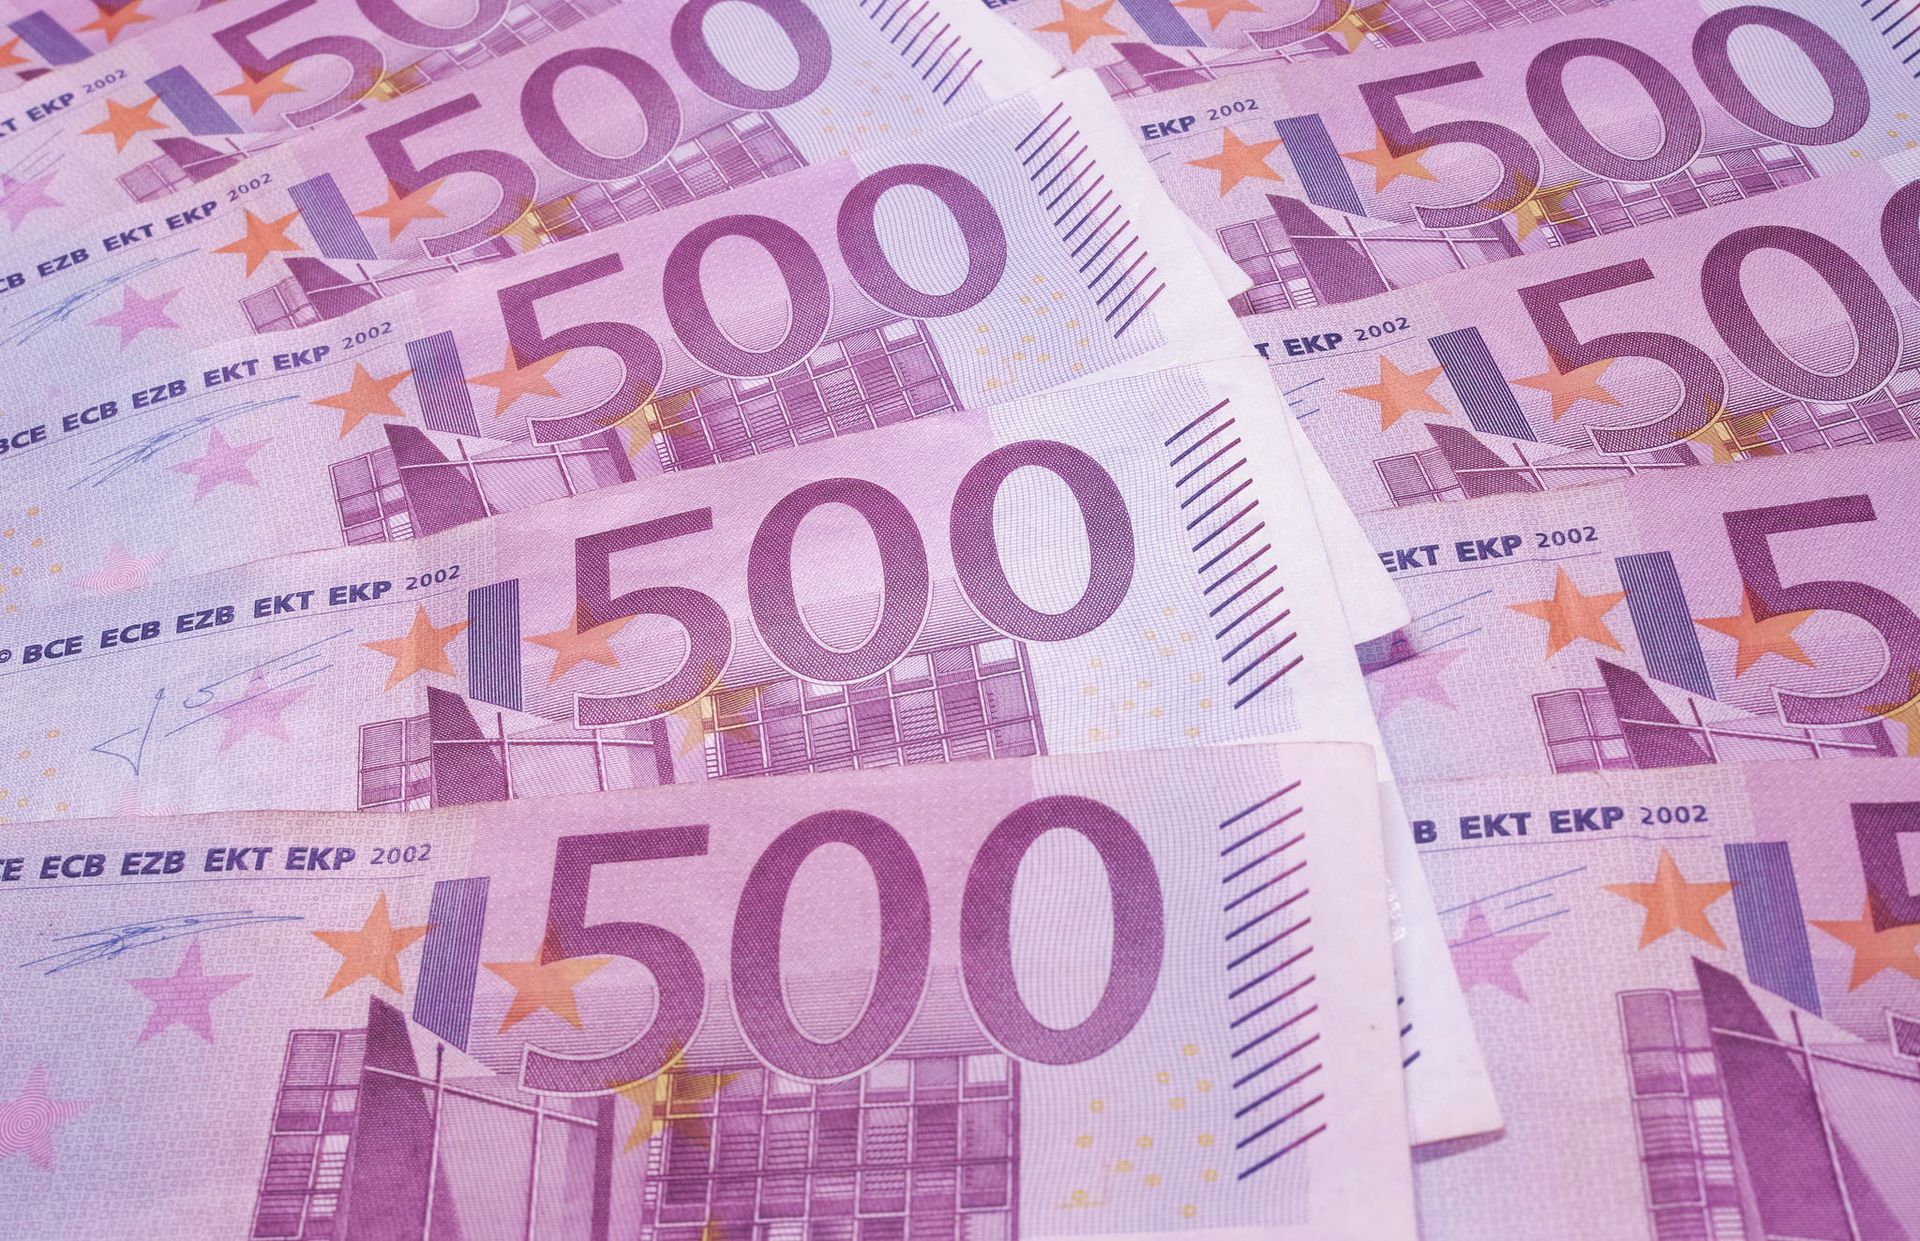 Mainstream Wijzerplaat Verouderd ECB stopt uitgifte 500 euro biljetten, Duitsers kritisch op verlies  vrijheid - Joop - BNNVARA